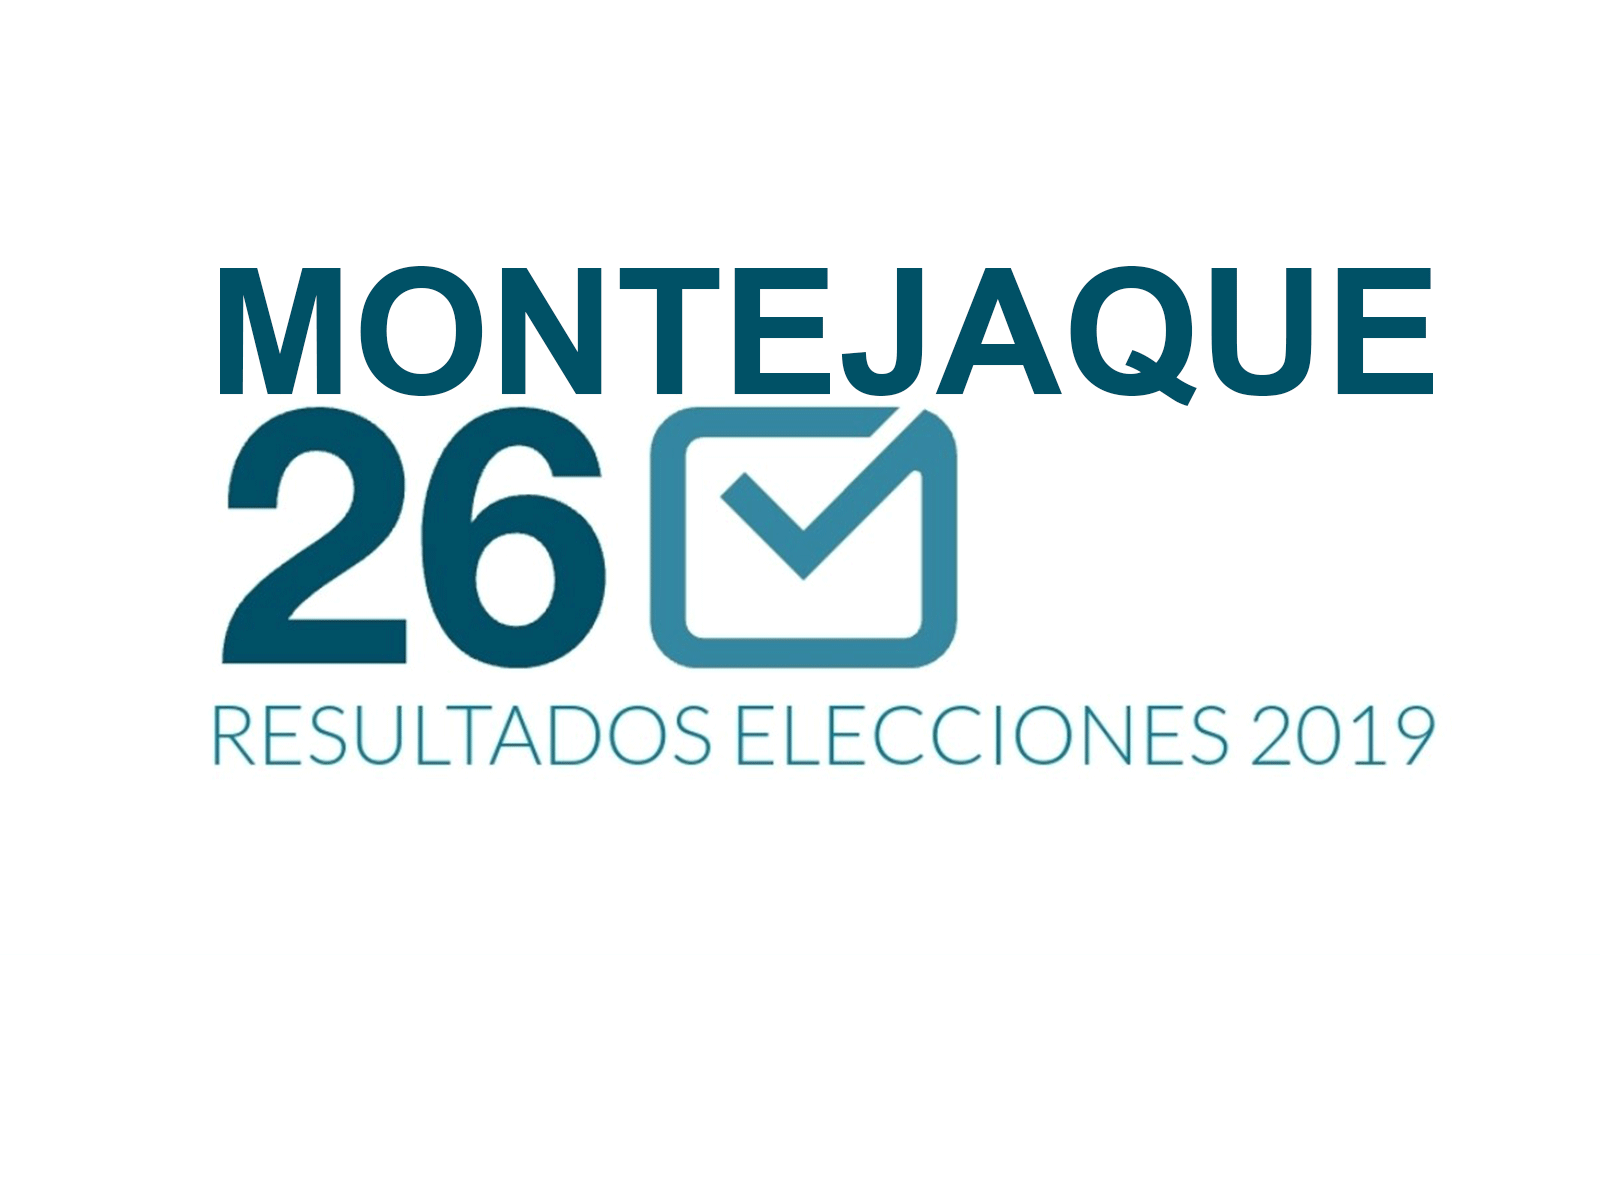 Resultados Elecciones Municipales y Europeas 26 Mayo 2019 Montejaque.